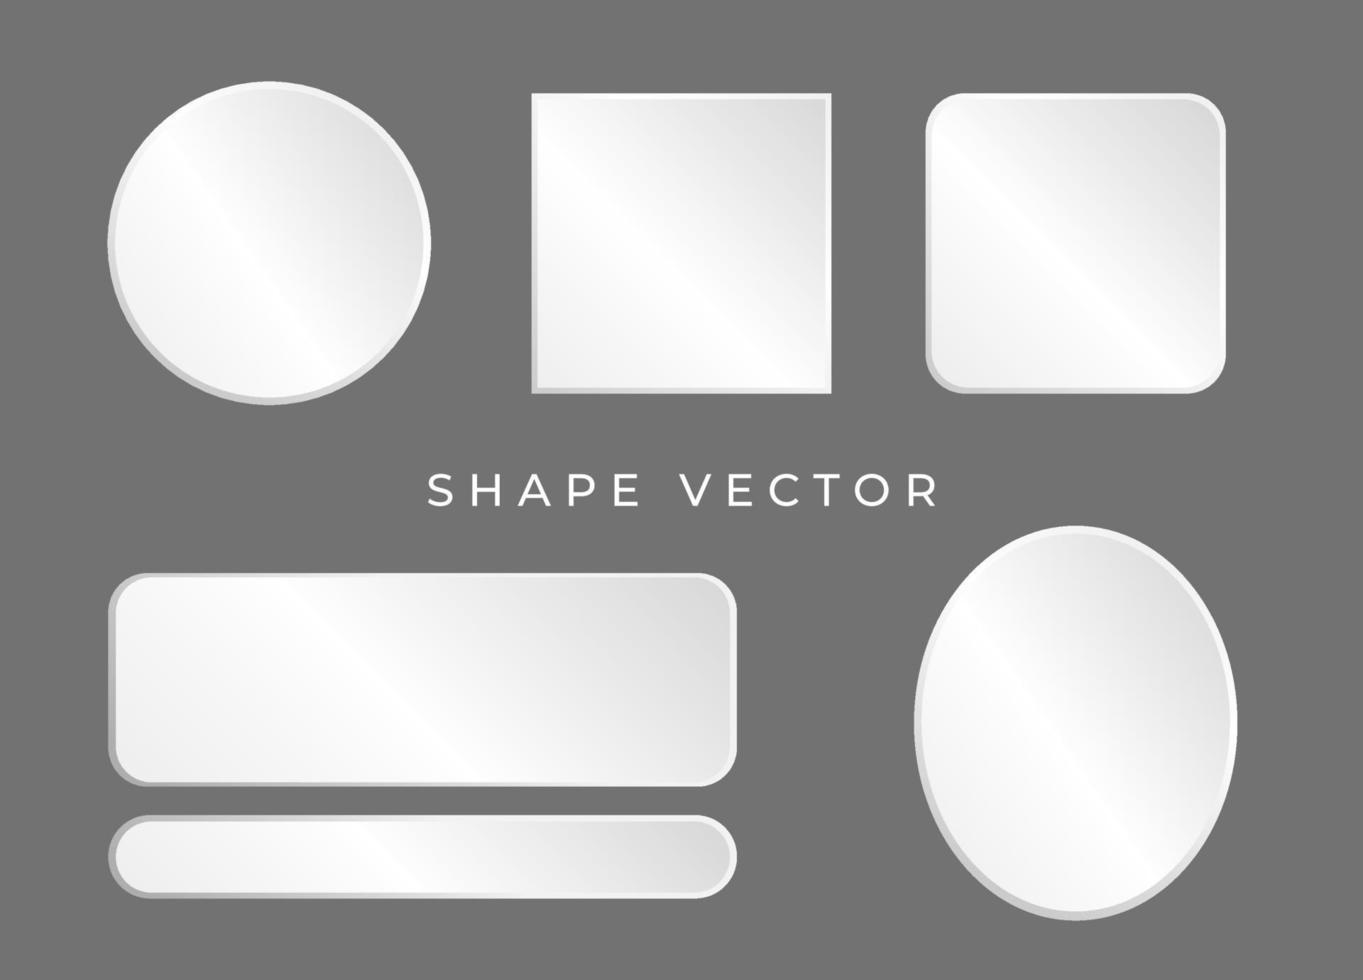 semplice bordo di forma bianca 3d o vettore di cornice su sfondo grigio con il cerchio, l'ellisse, il quadrato può essere inserito testo o prodotto sulla cornice